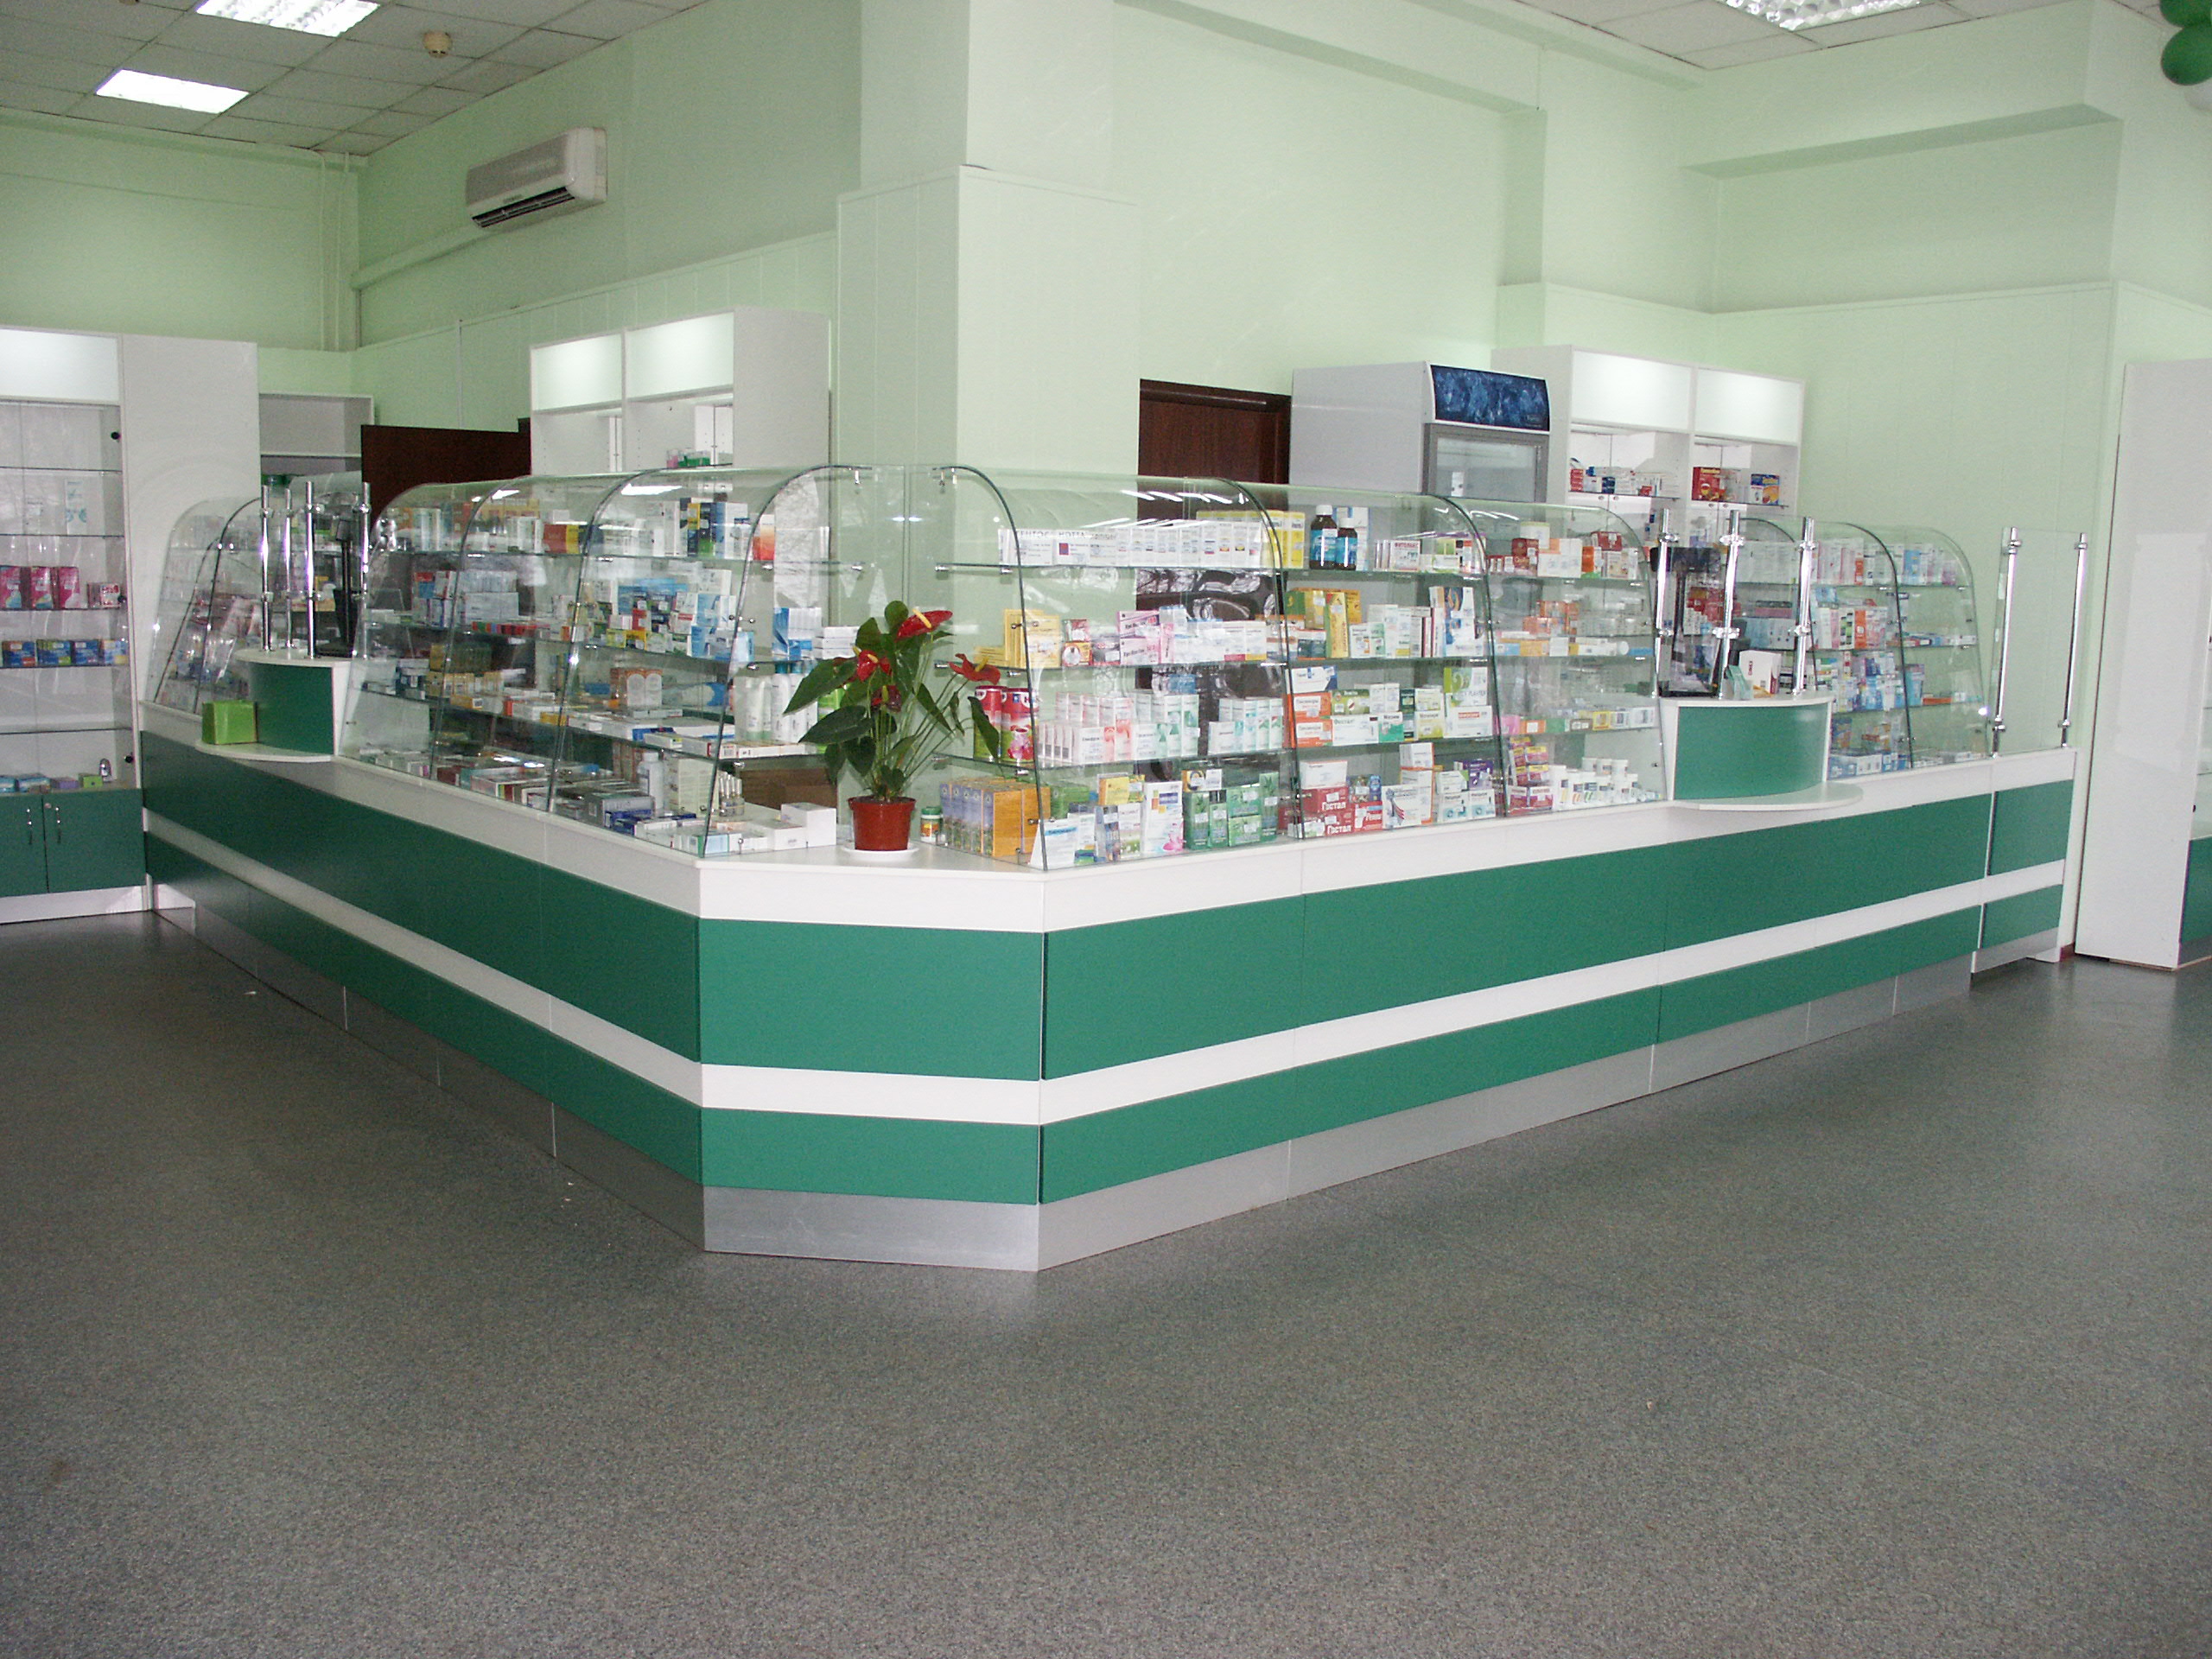 Аптека в спальном районе Москвы: яркие цвета, интересный дизайн, оптимальная экспозиционная площадь